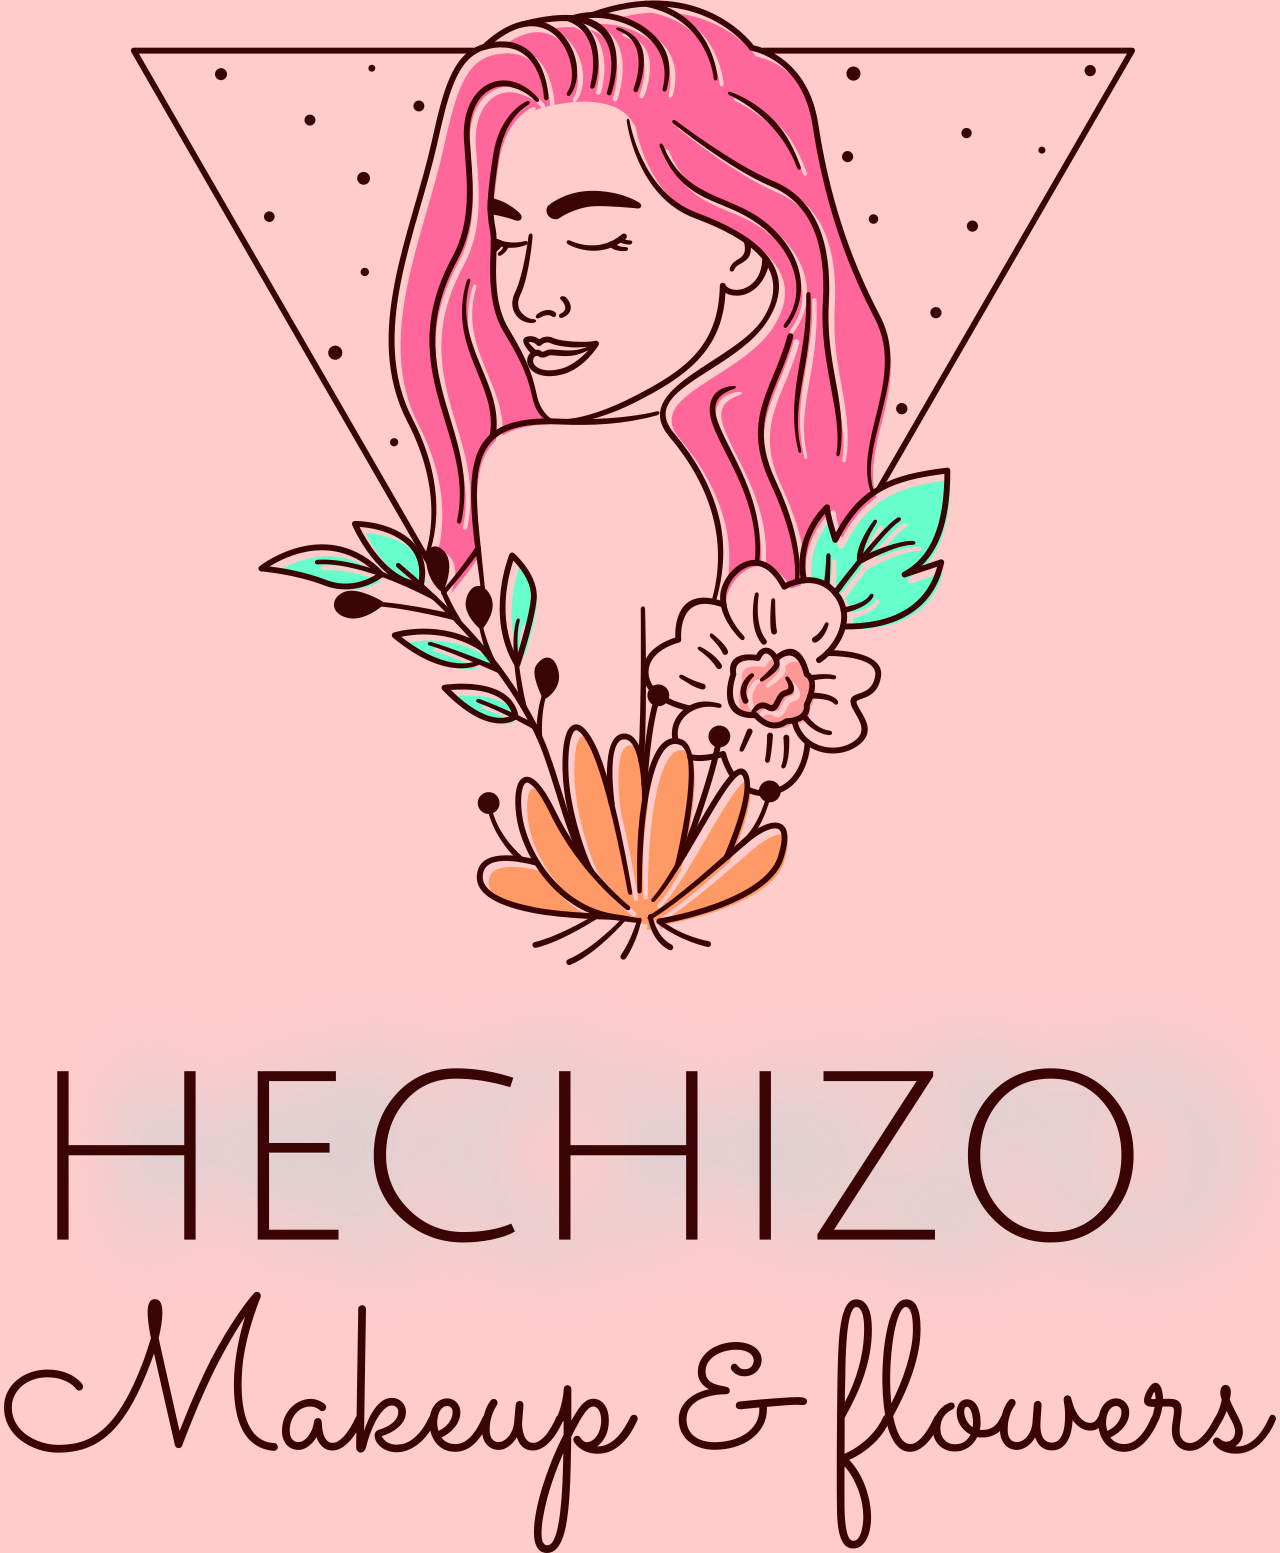 HECHIZO 's web page